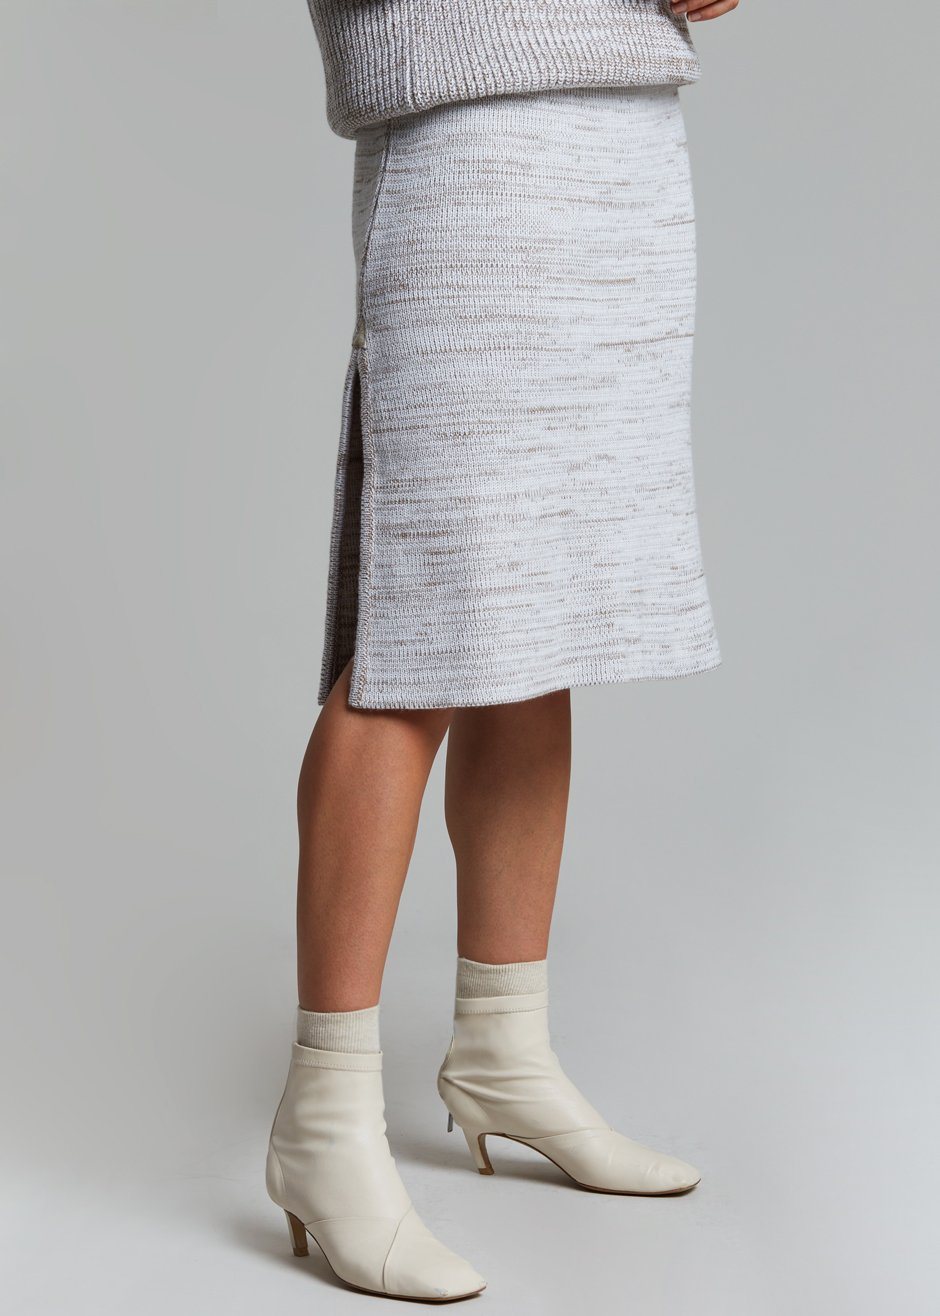 Bevza Knitted Skirt - Light Beige Melange - 2